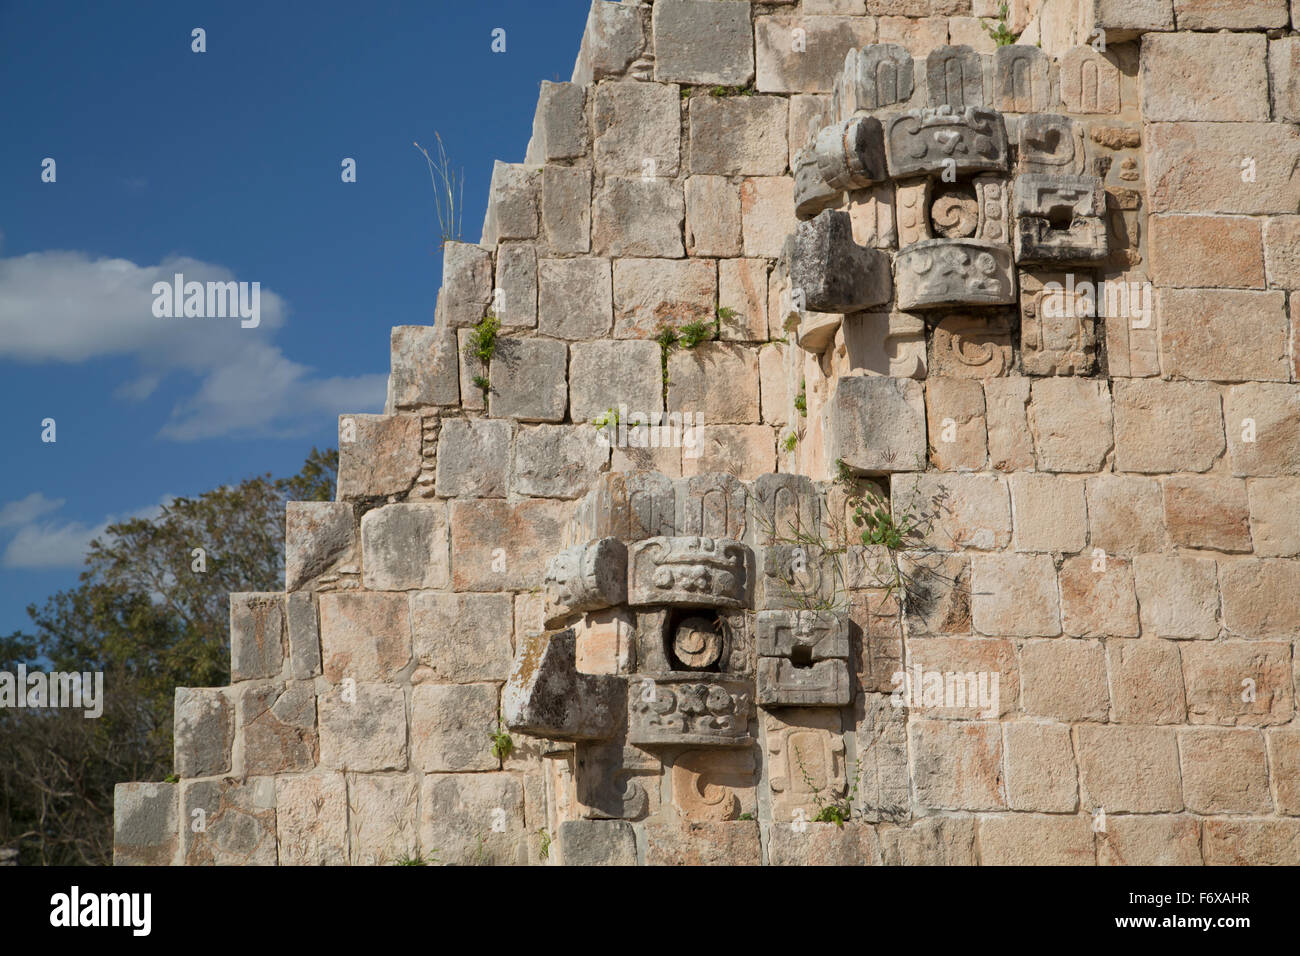 Regengott Chac Stein Masken, Pyramide des Zauberers, der Maya-Ausgrabungsstätte Uxmal; Yucatan, Mexiko Stockfoto